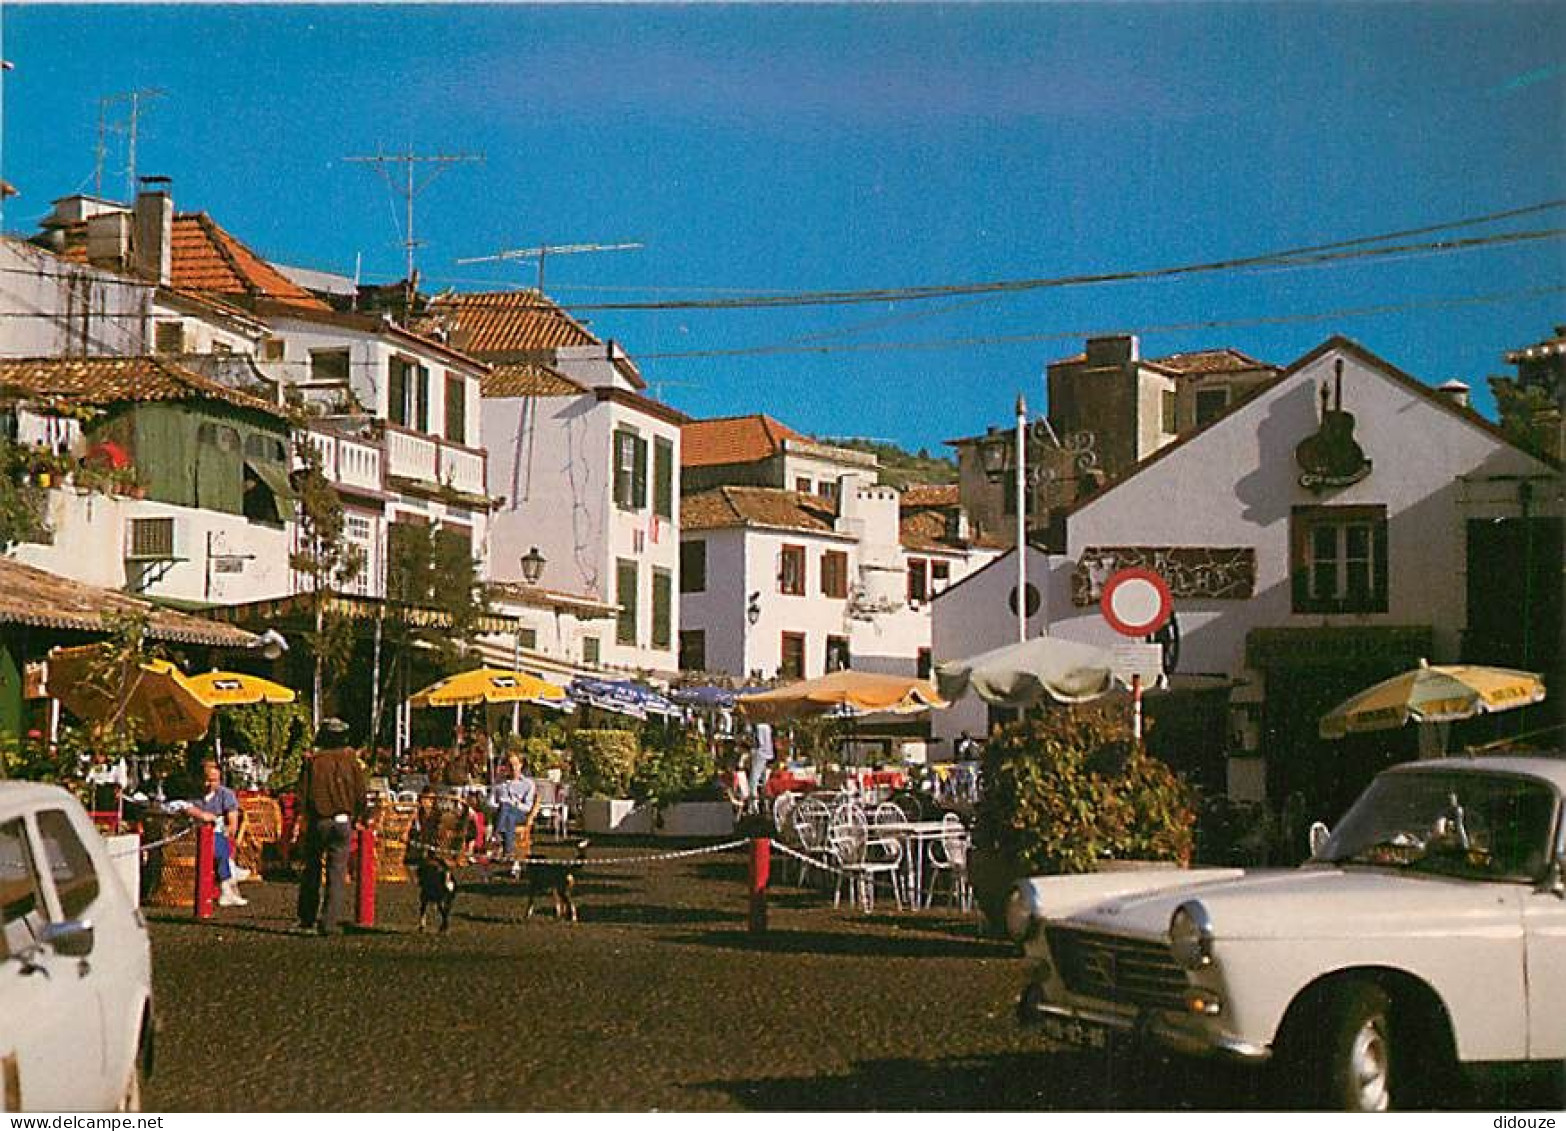 Automobiles - Portugal - Funchal ( Madeira ) - Pormenor Da Zona Velha Da Cidade - Détail Du Vieil Quartier De La Ville - - Turismo